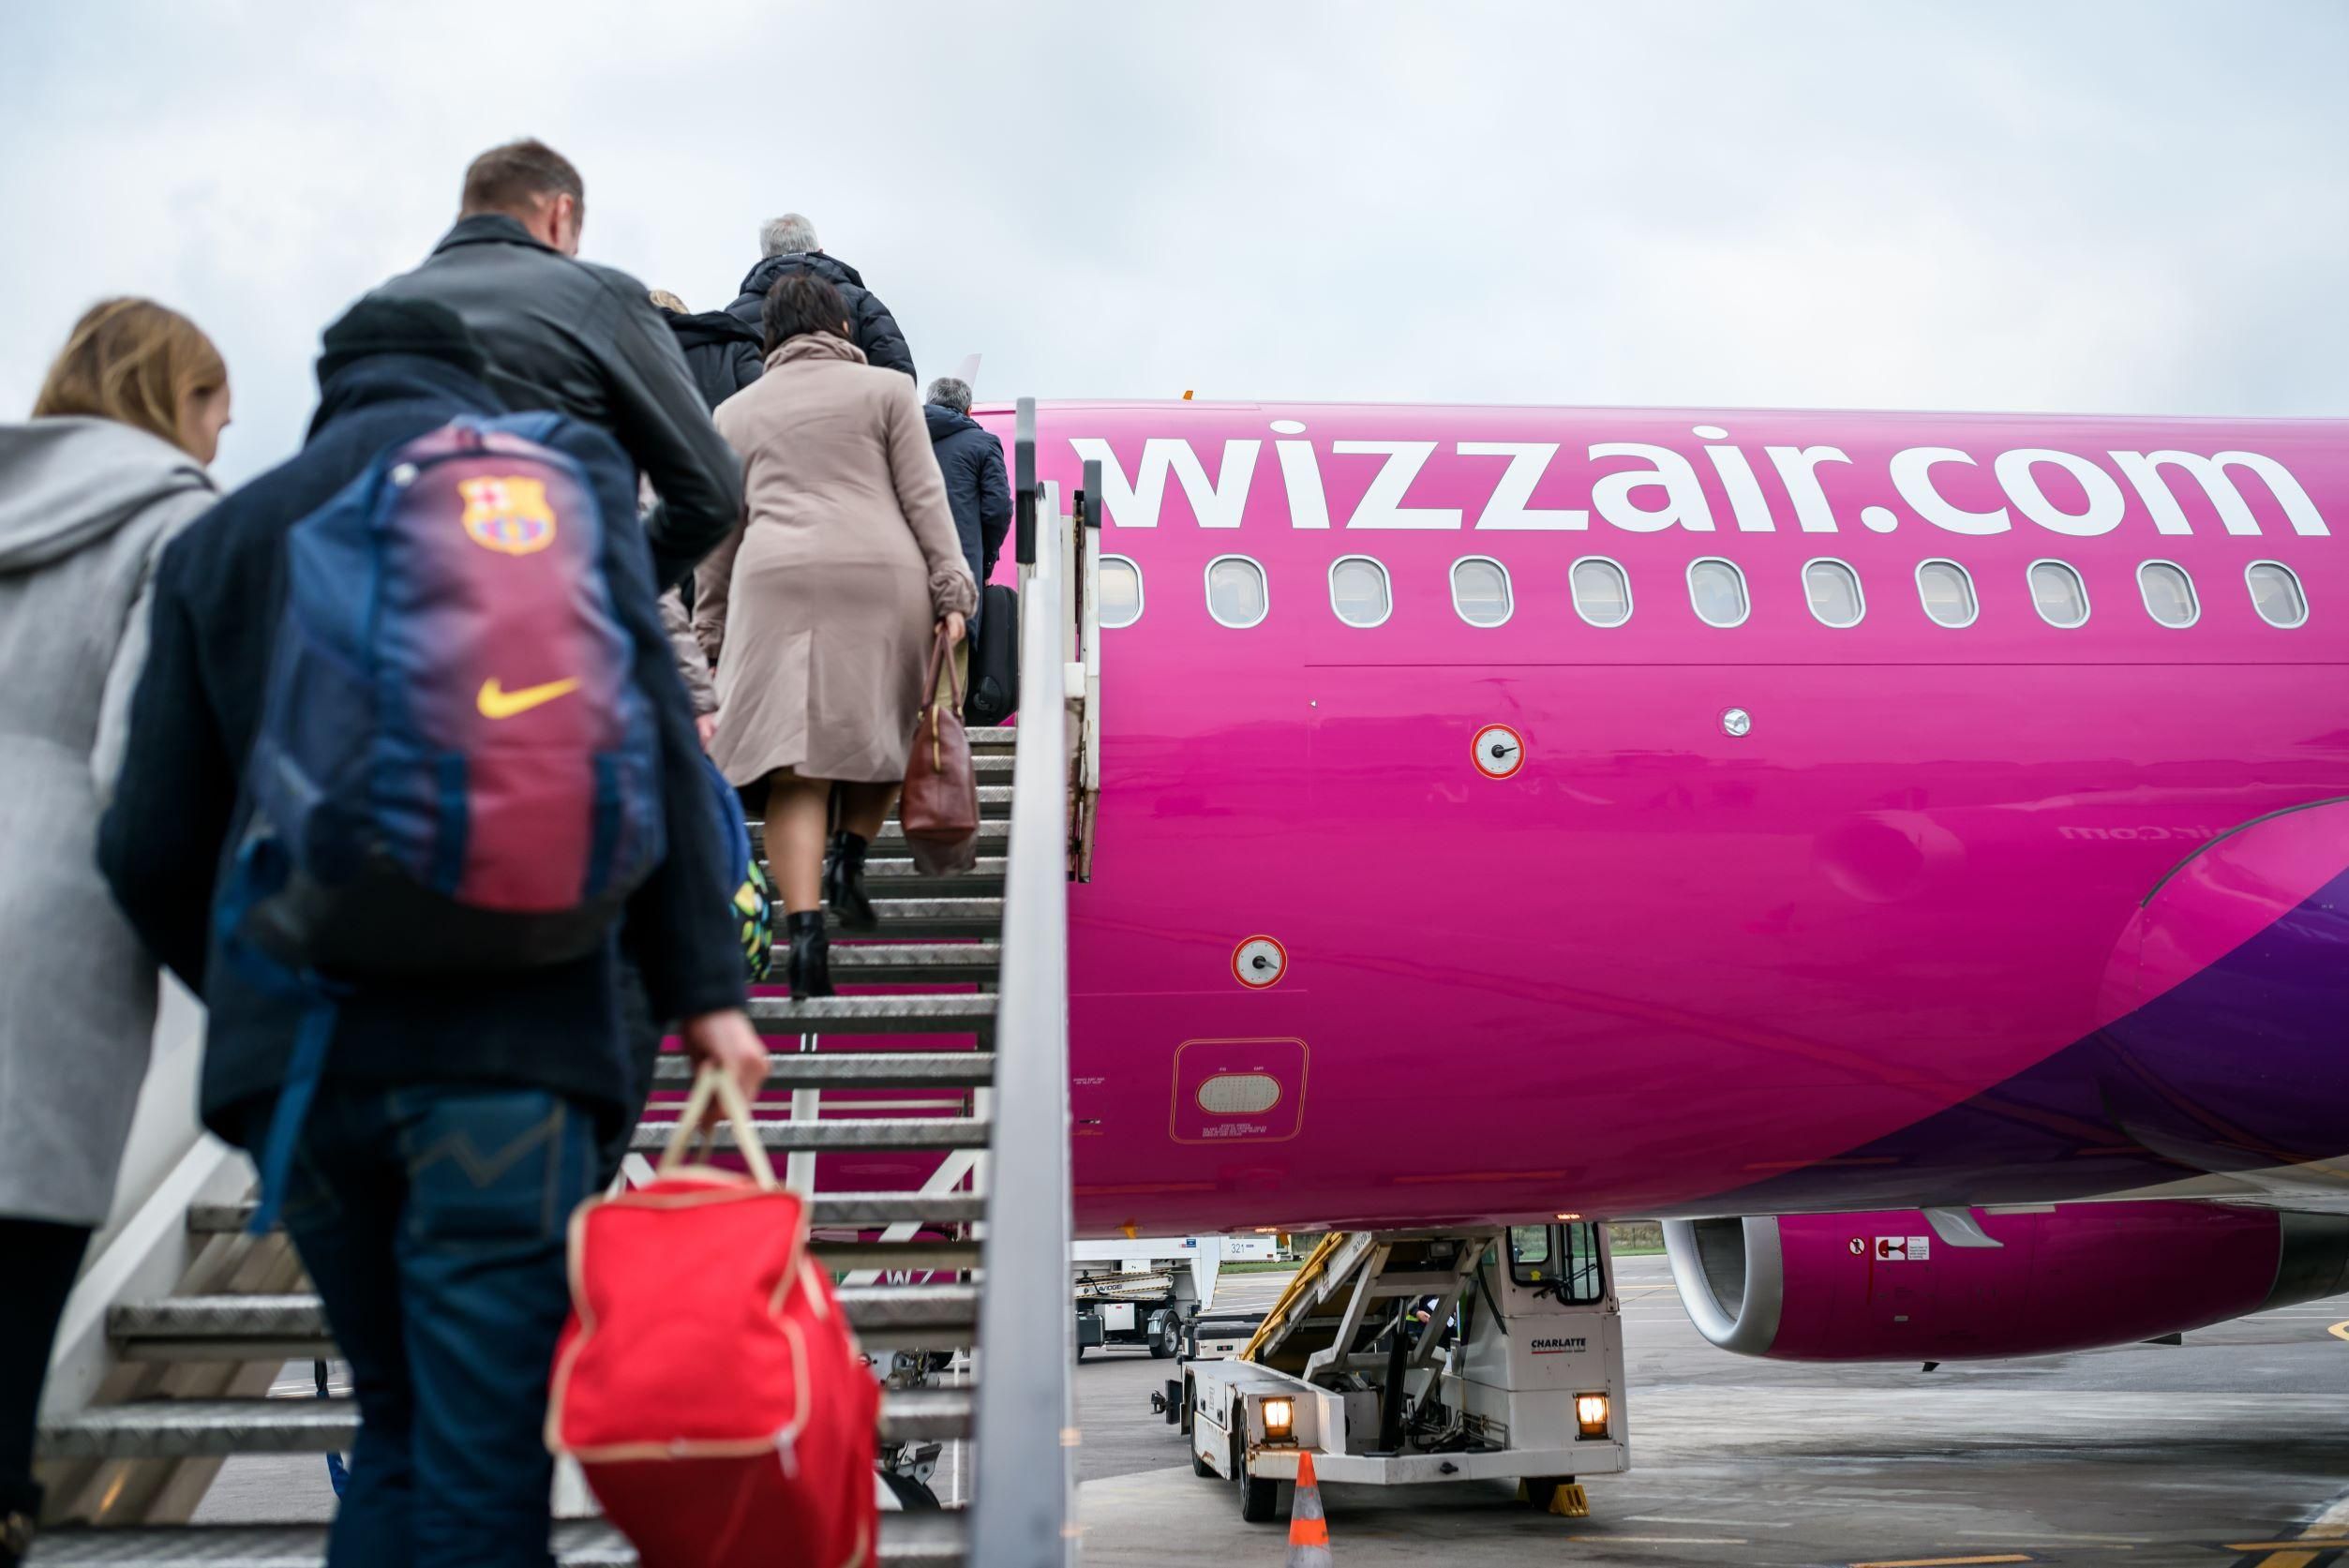 Pilótatoborzó nap lesz a Wizz Air-nél, Budapesten